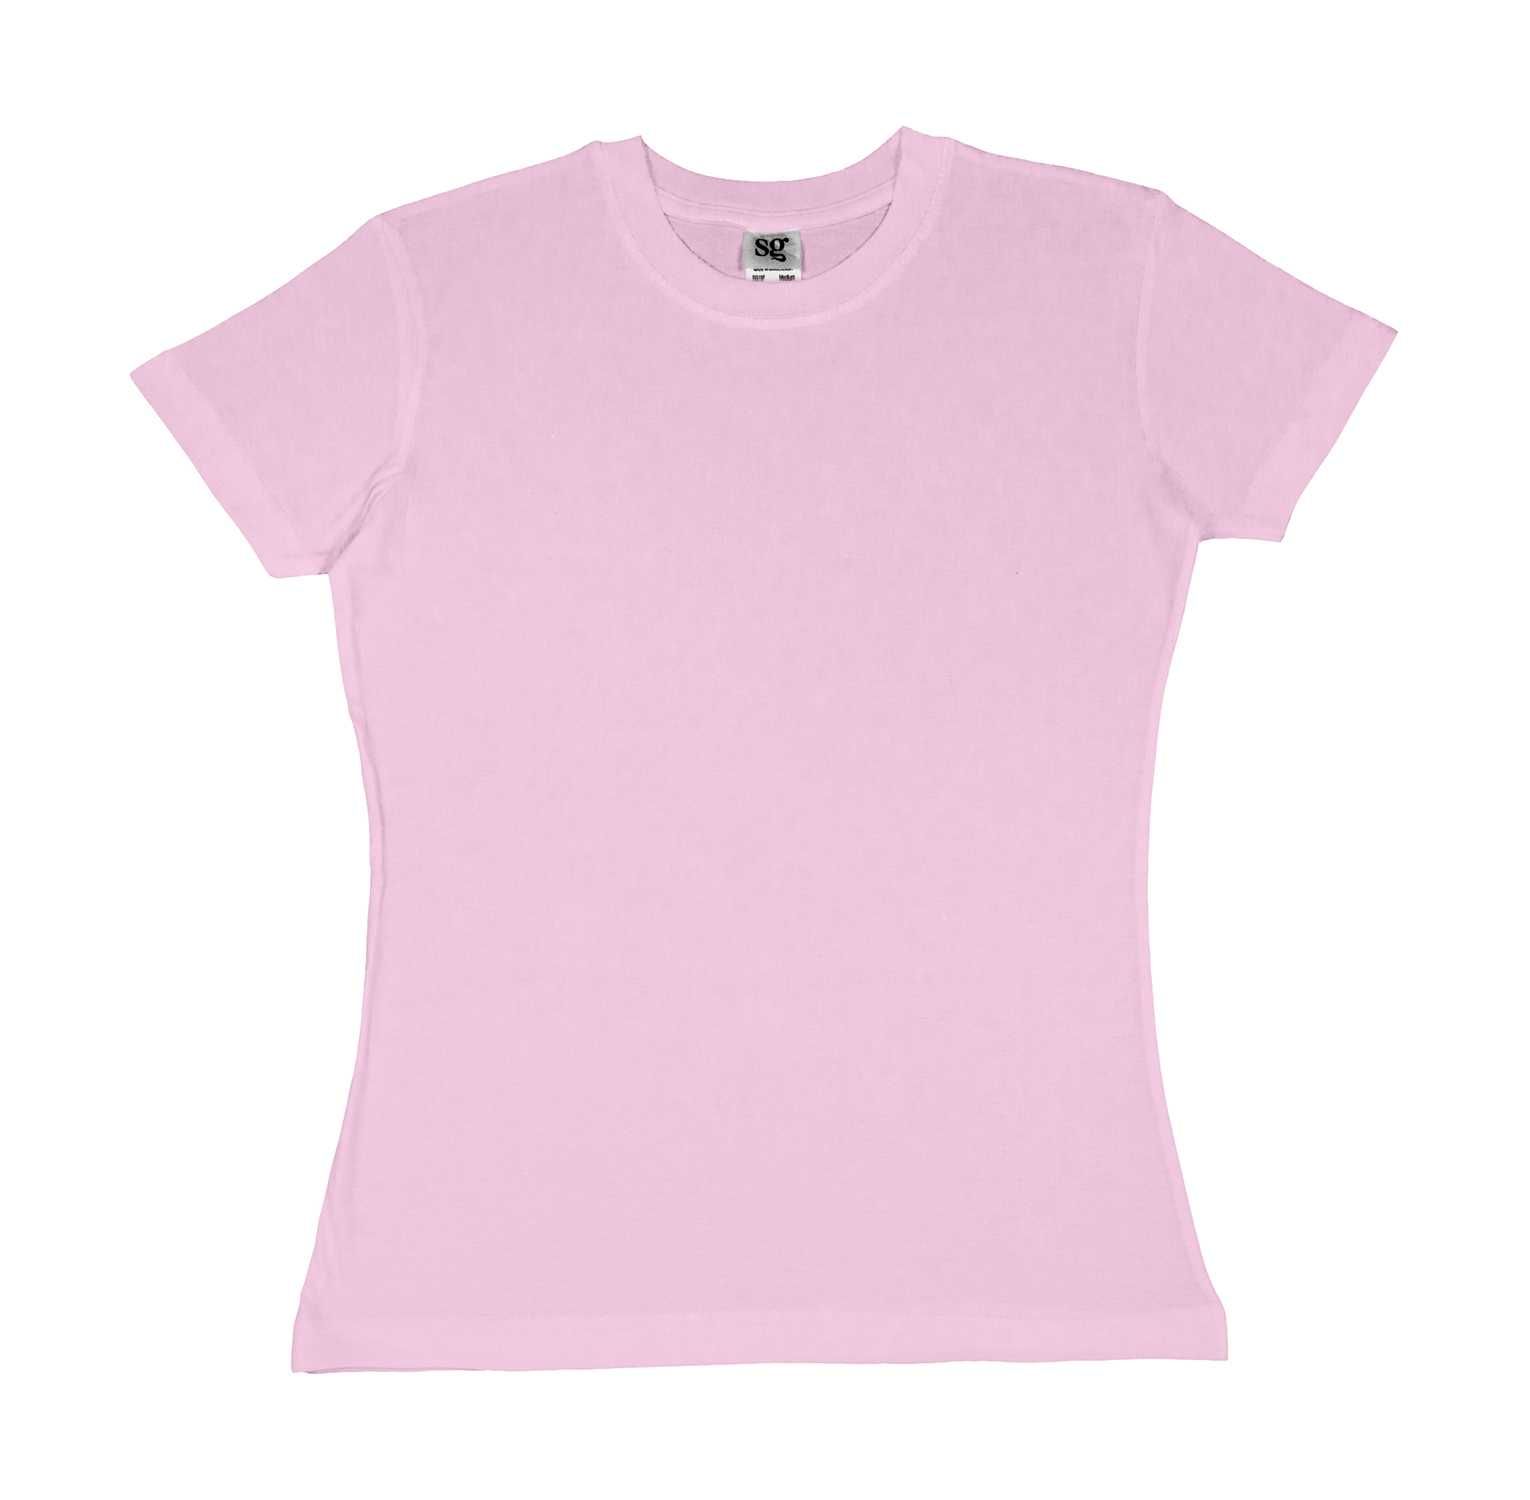 Koszulka damska SG różowa XXL